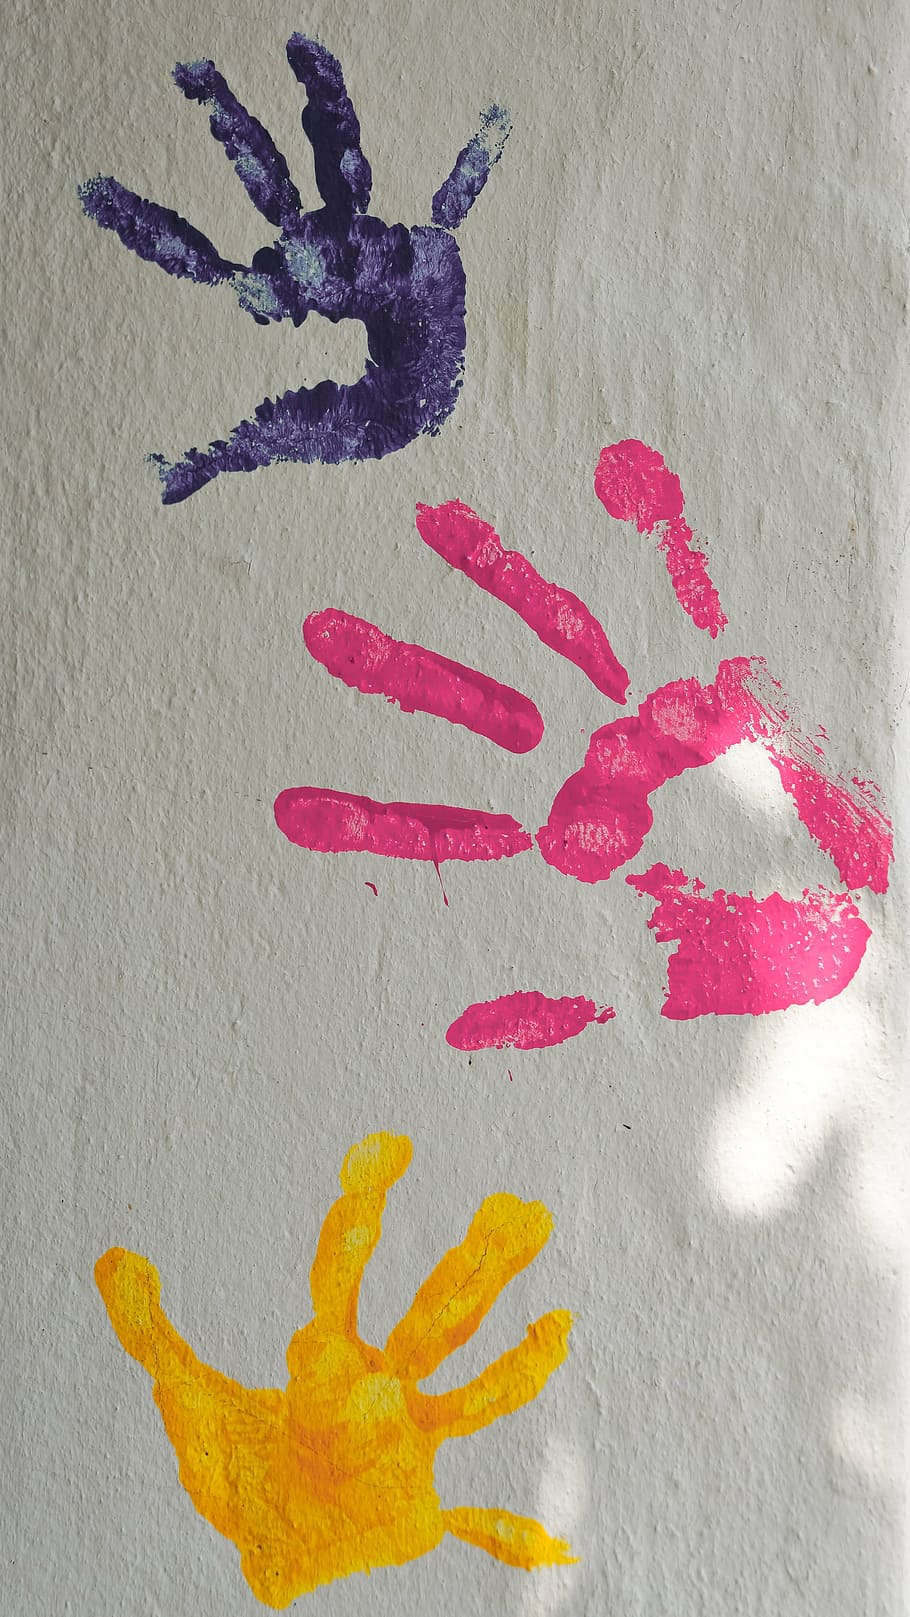 3, ハンドプリント, 壁, 塗料, 色, 指, 手のひら, 手, 子供, 印刷